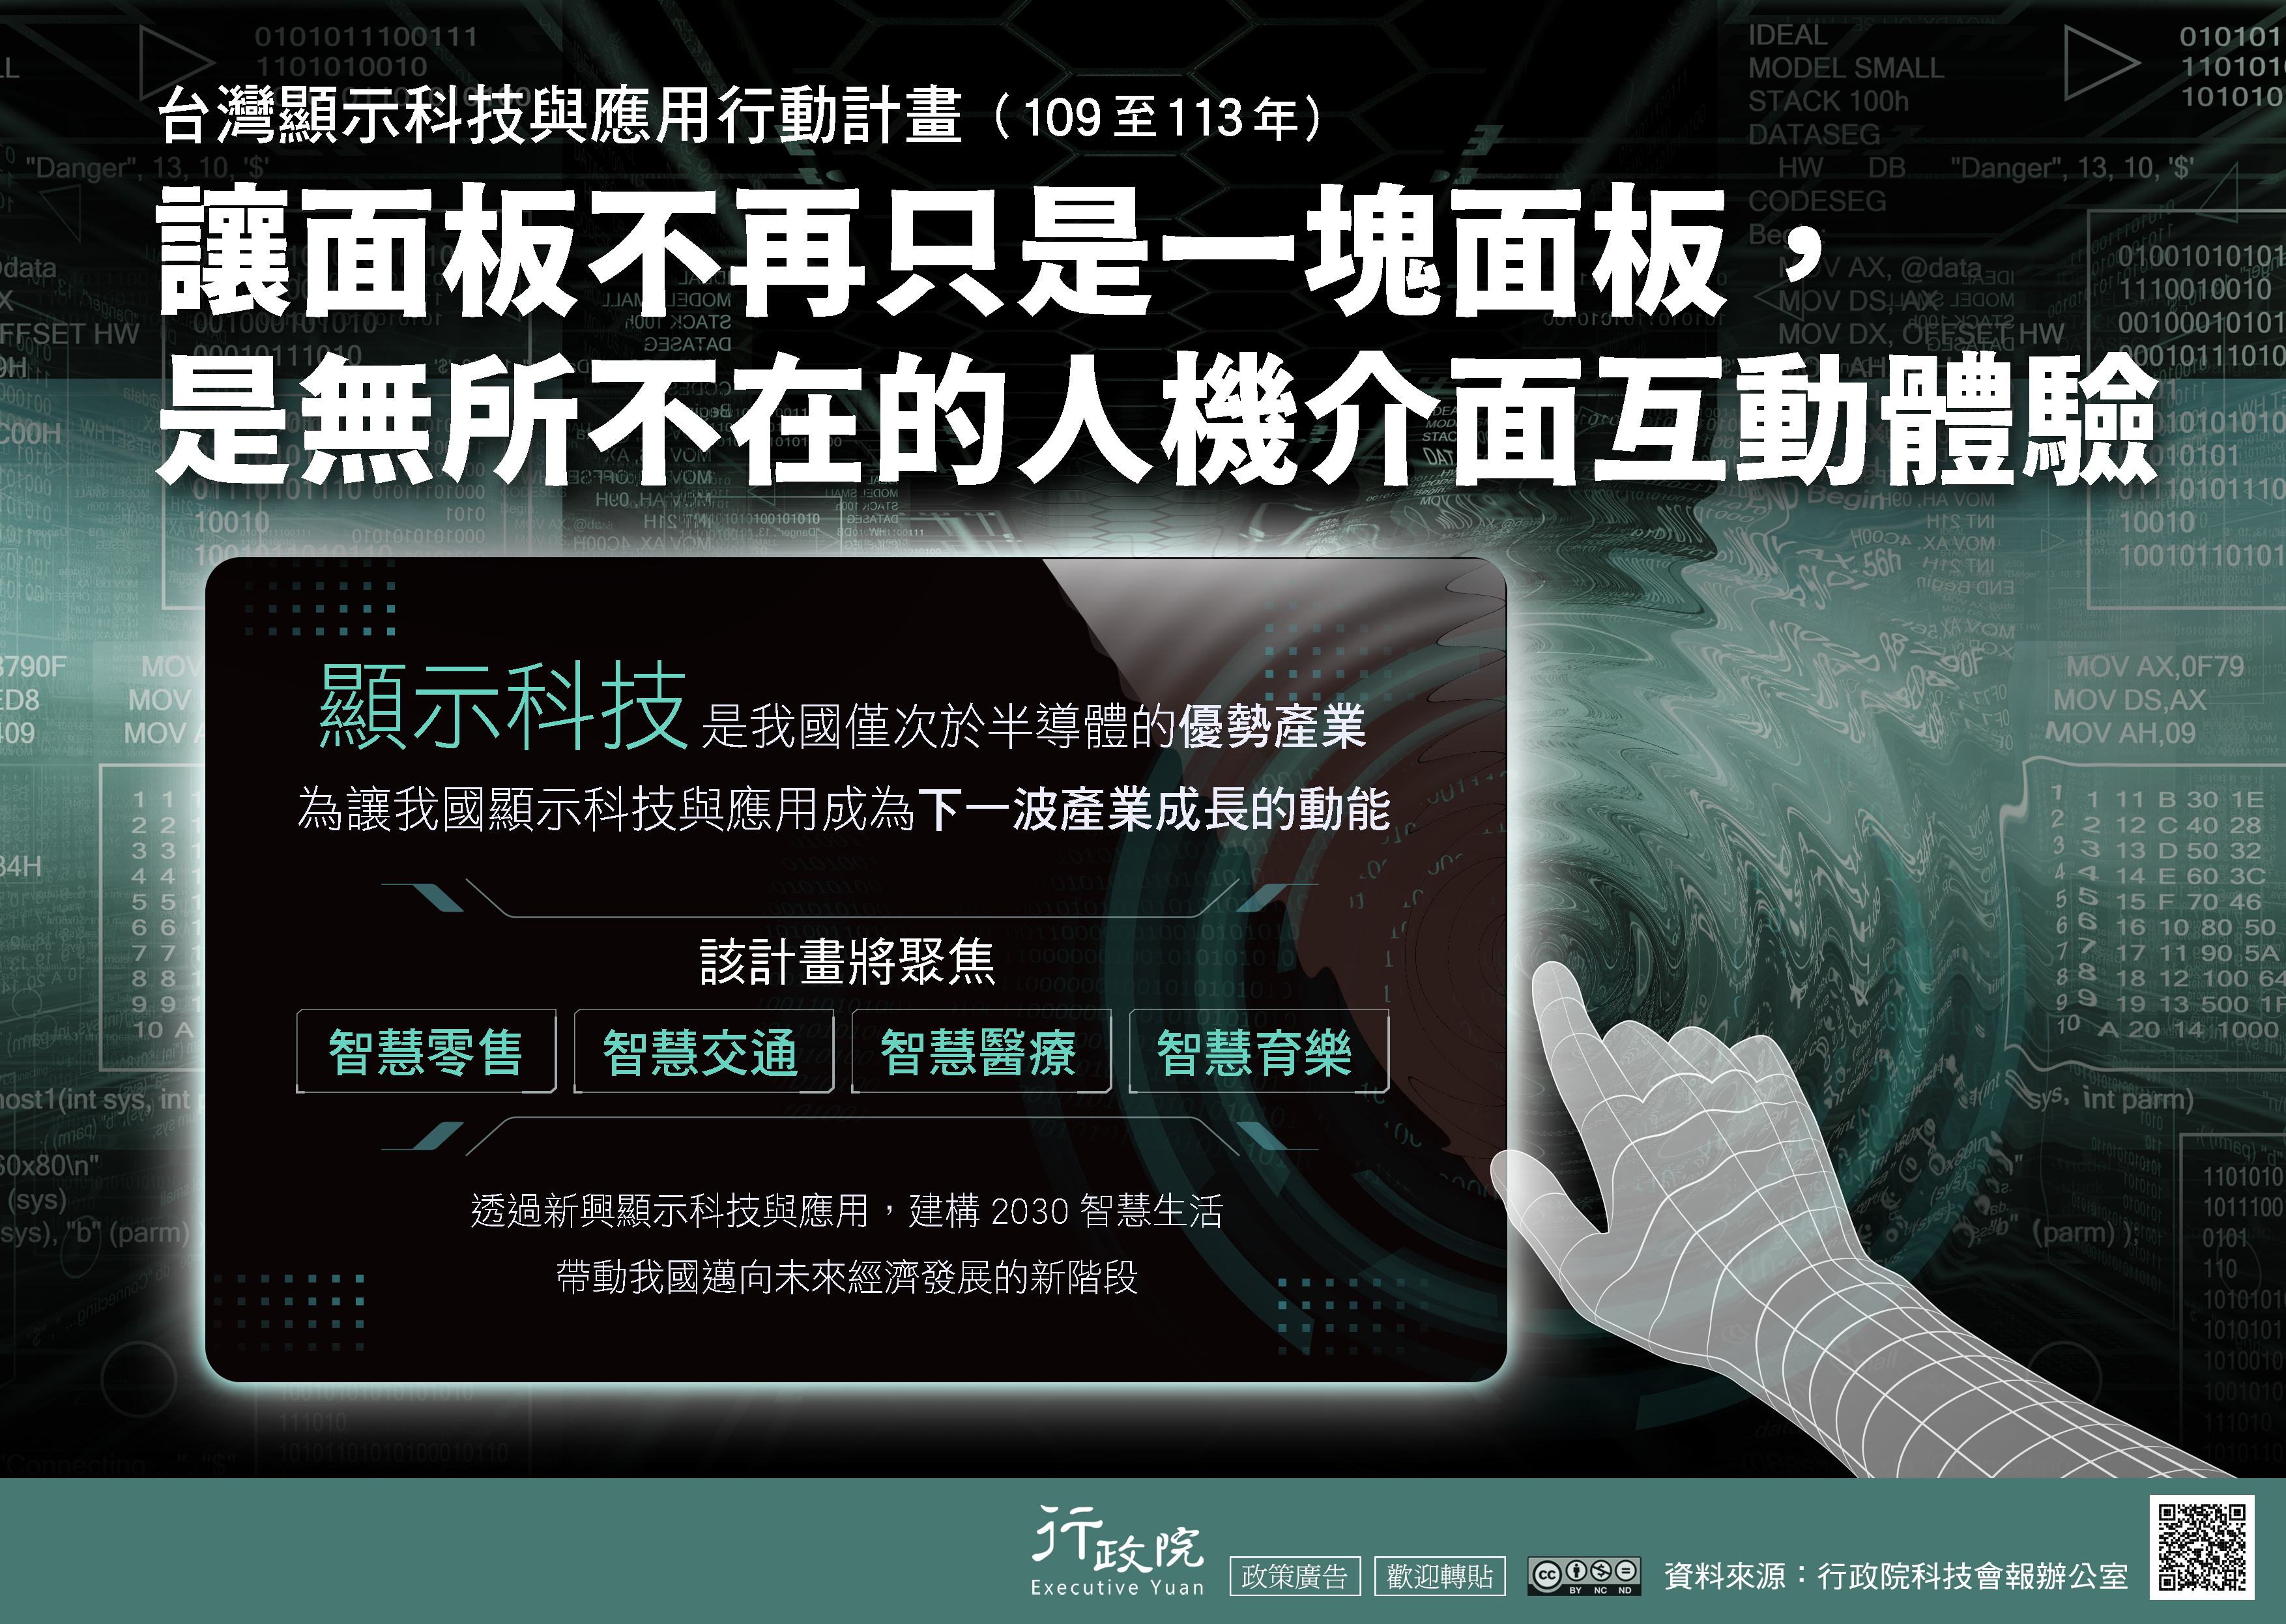 台灣顯示科技與應用行動計畫文宣